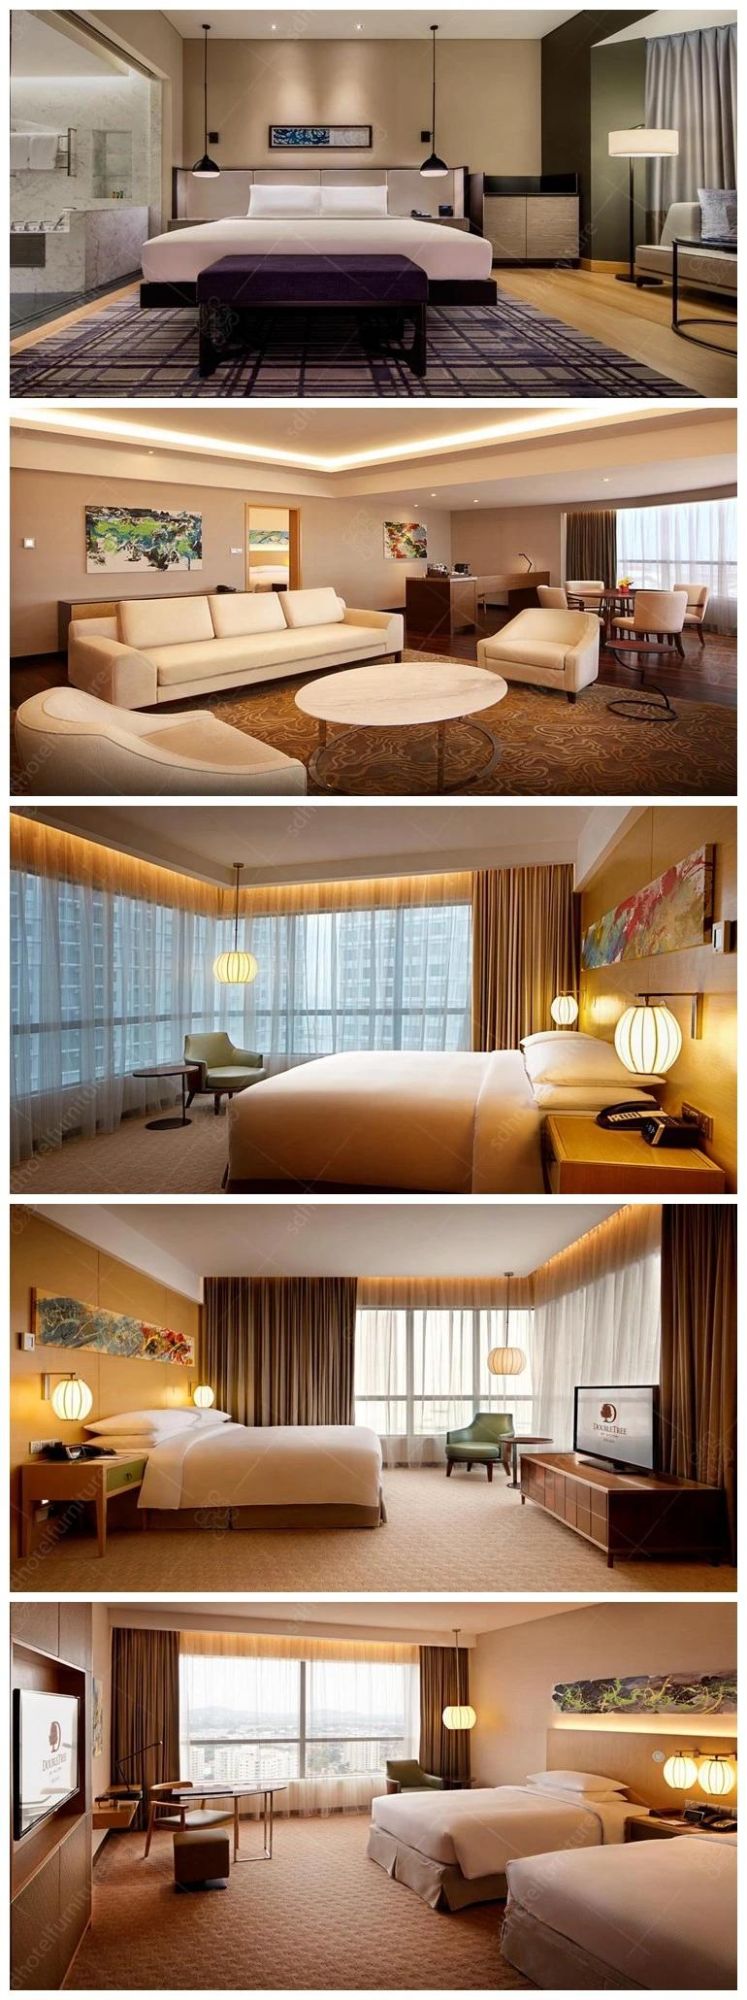 2018 Modern Design Commercial Bed Design Furniture Wooden Hotel Furniture SD1181